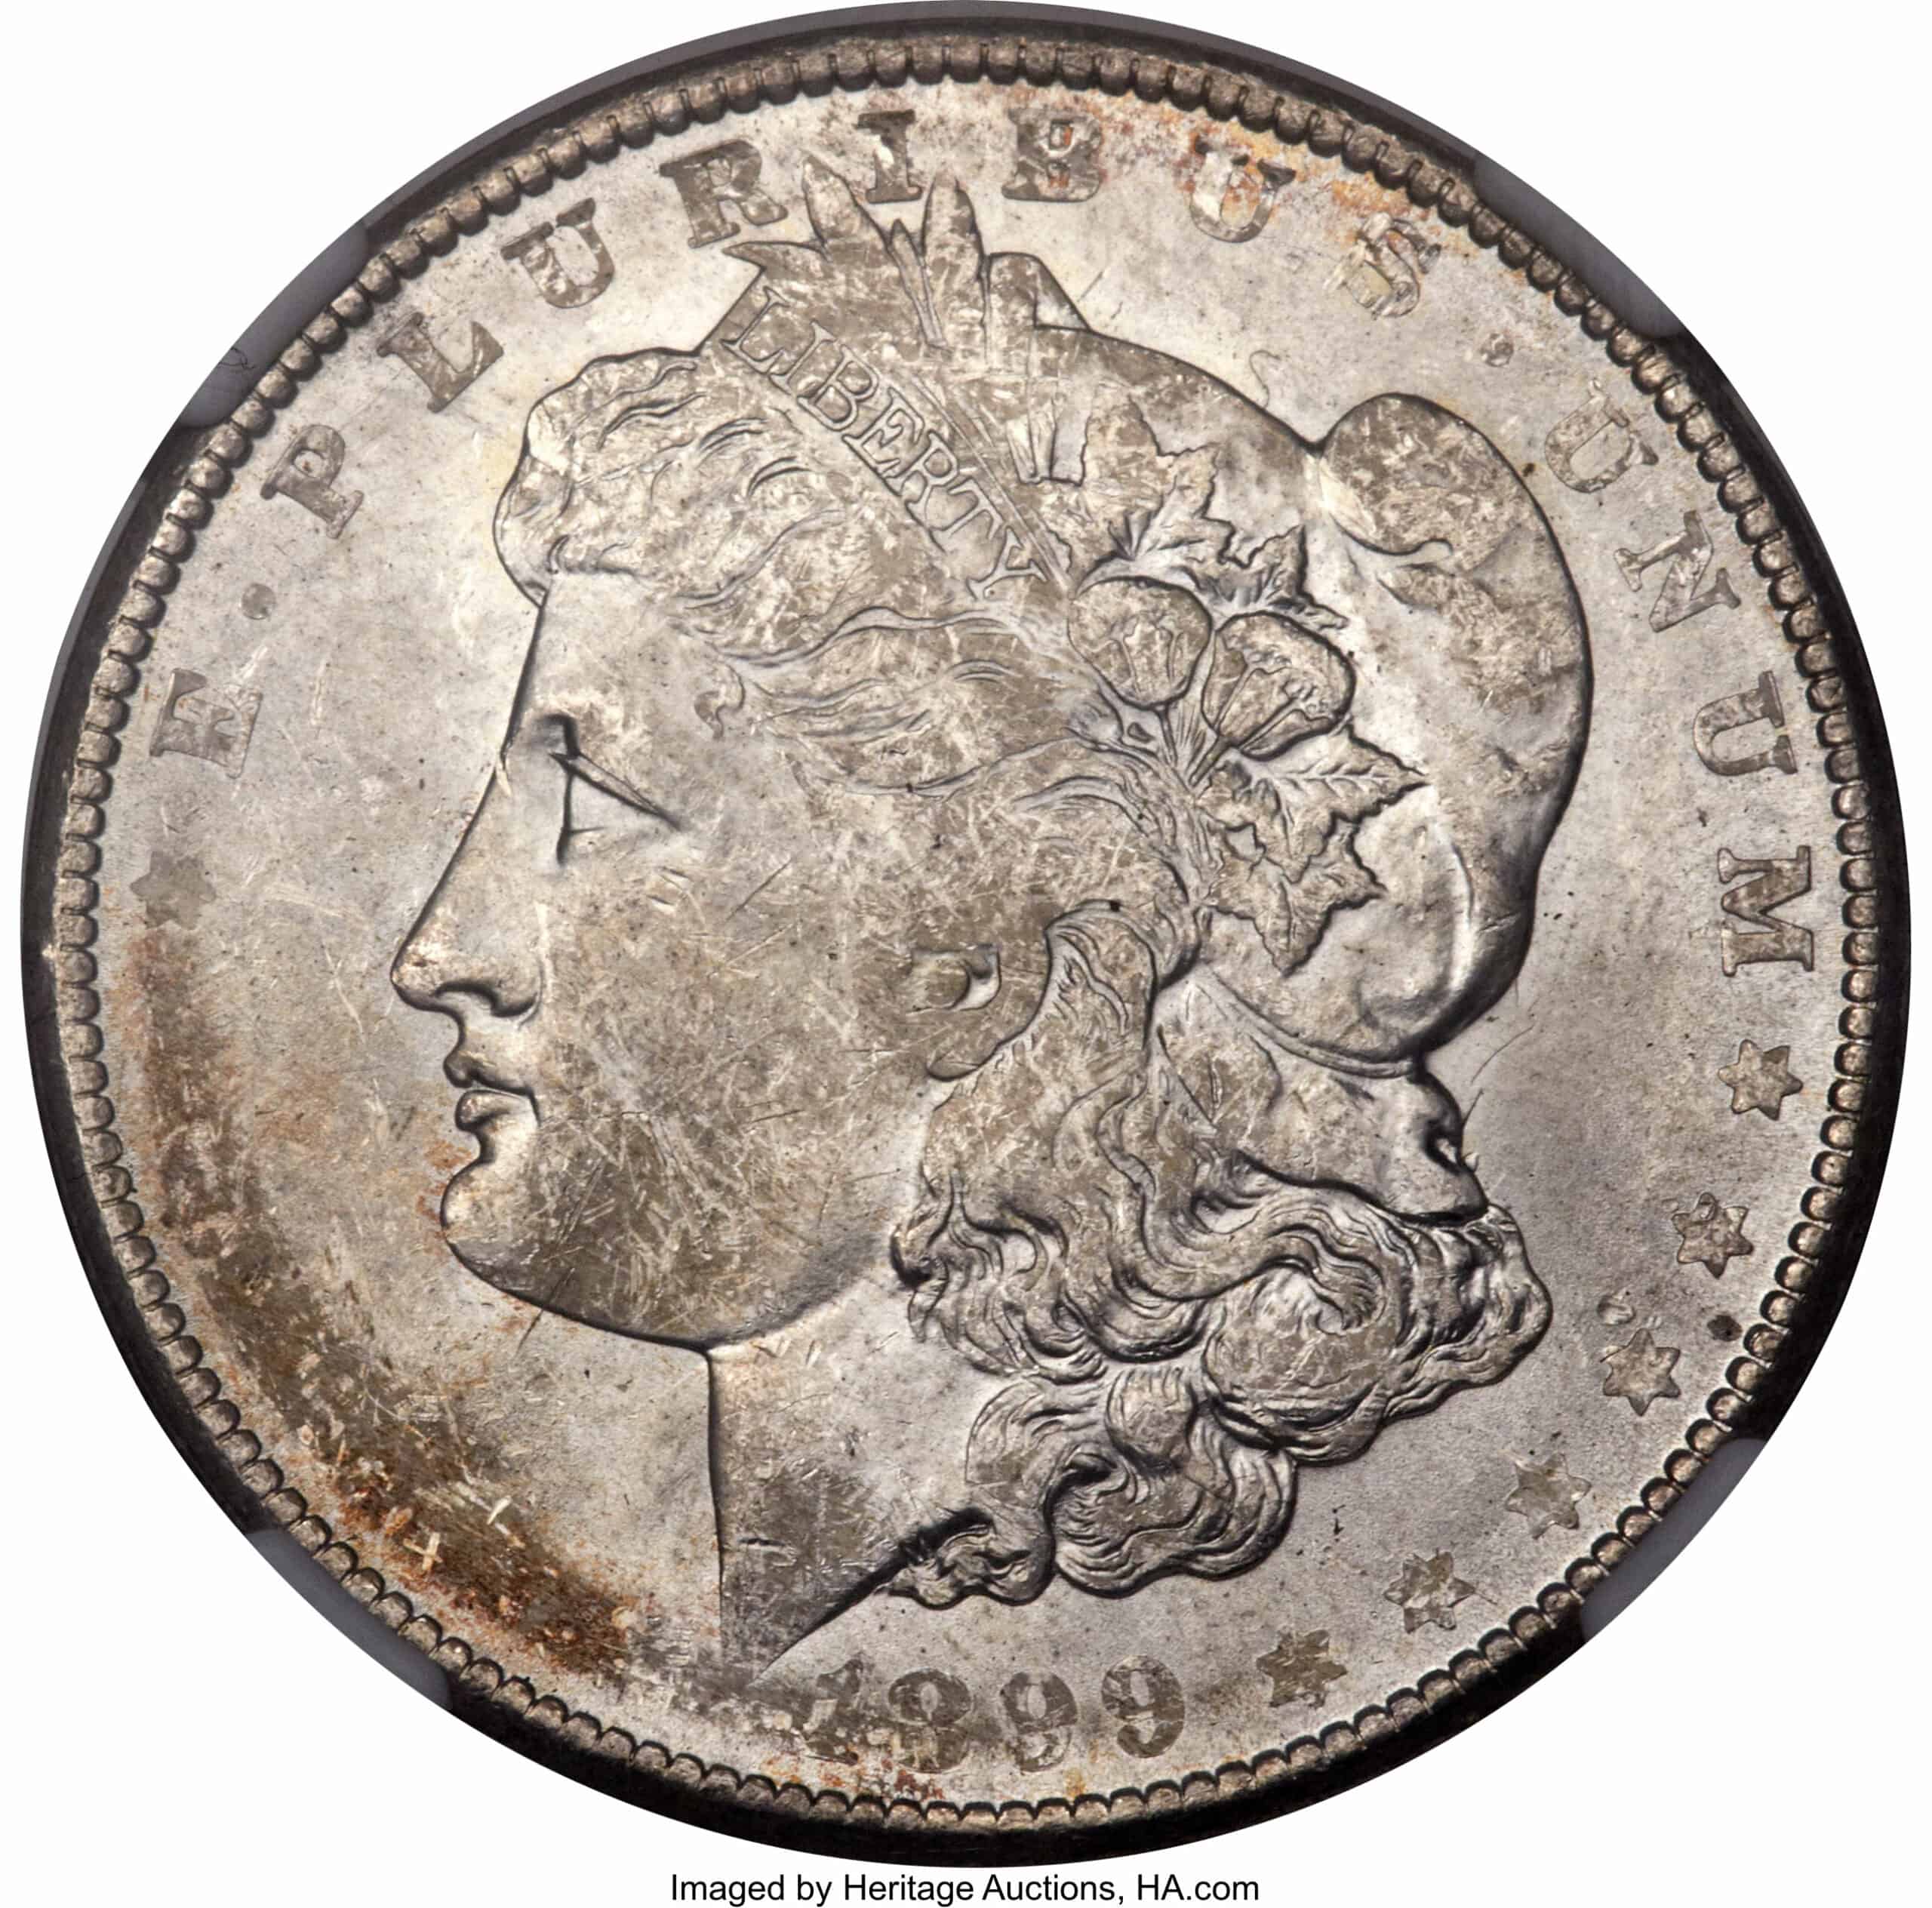 1899 Silver Dollar with Die Adjustment Strike Error